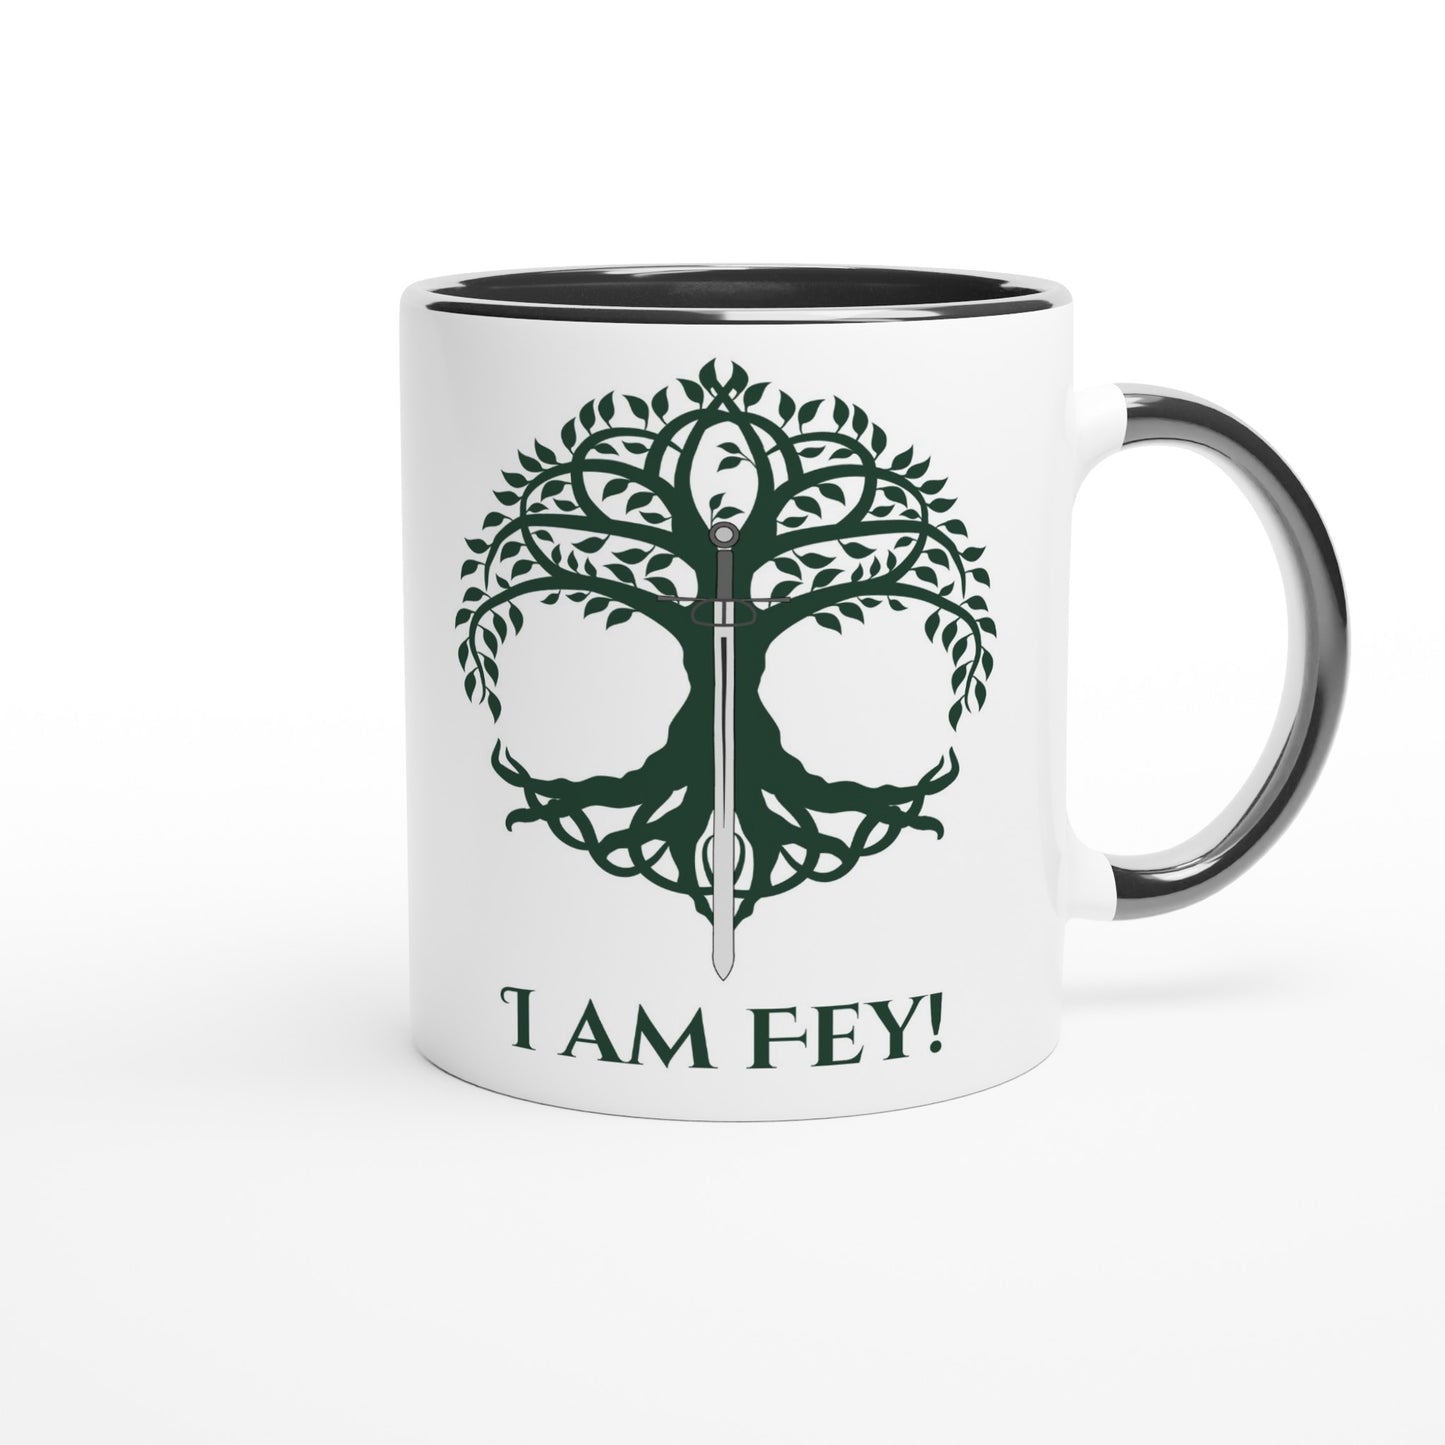 I am Fey White 11oz Ceramic Mug with Color Inside